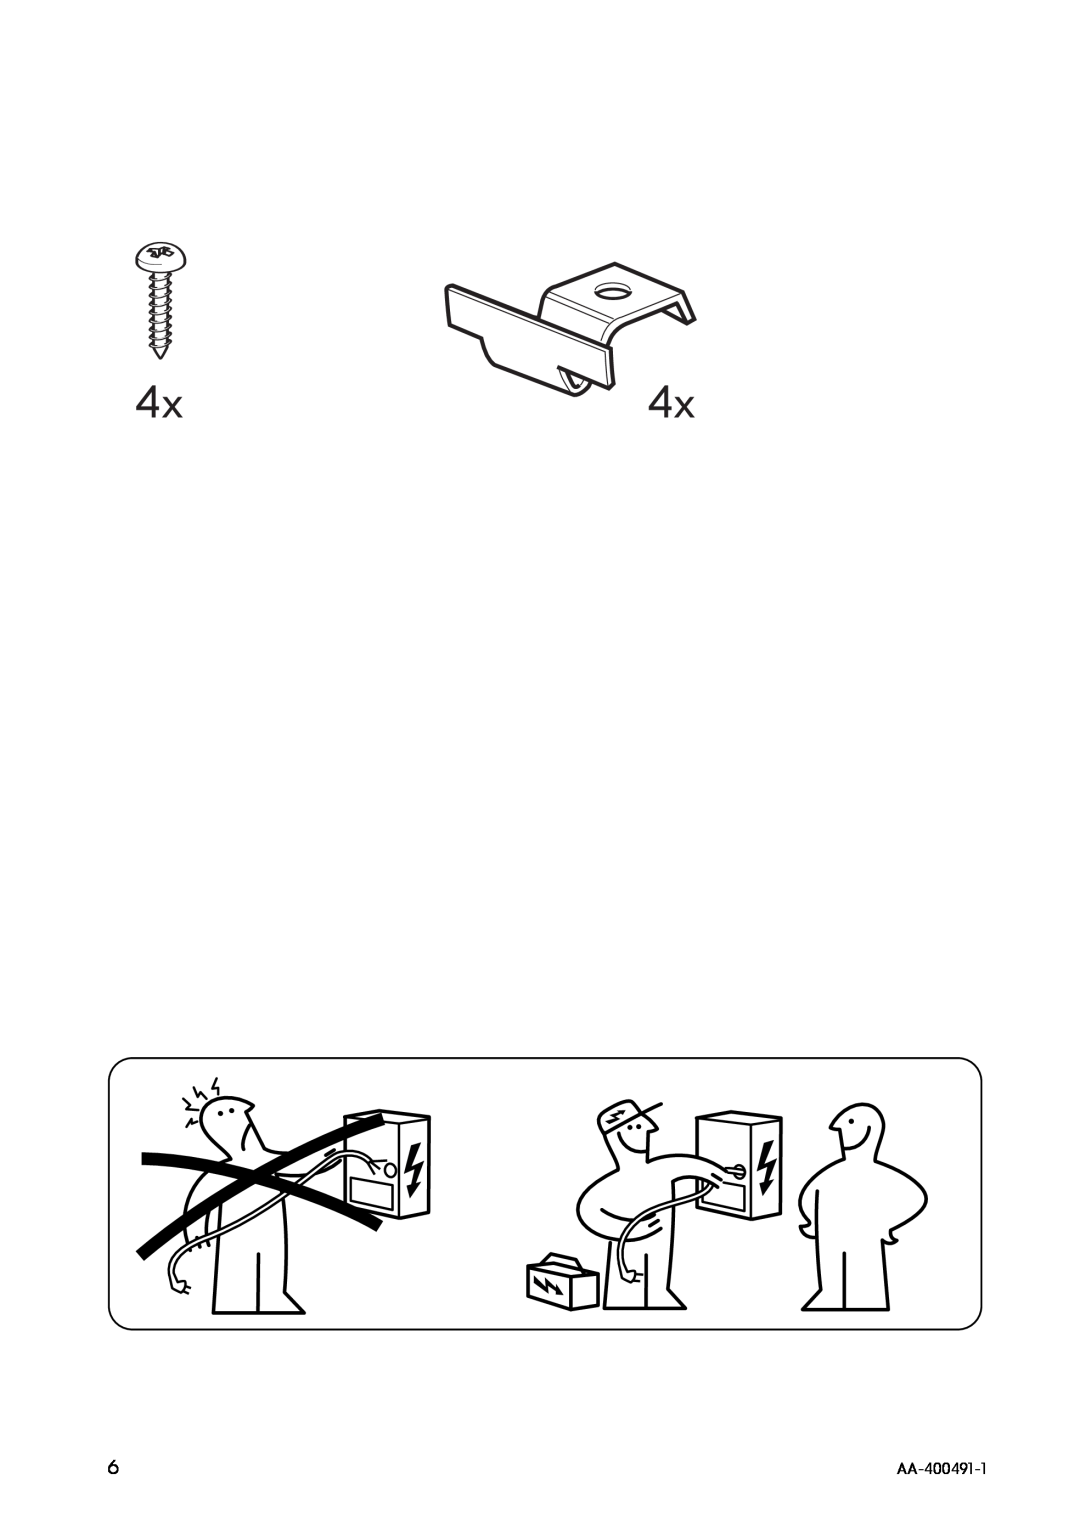 IKEA HIN1T manual 4x4x, AA-400491-1 